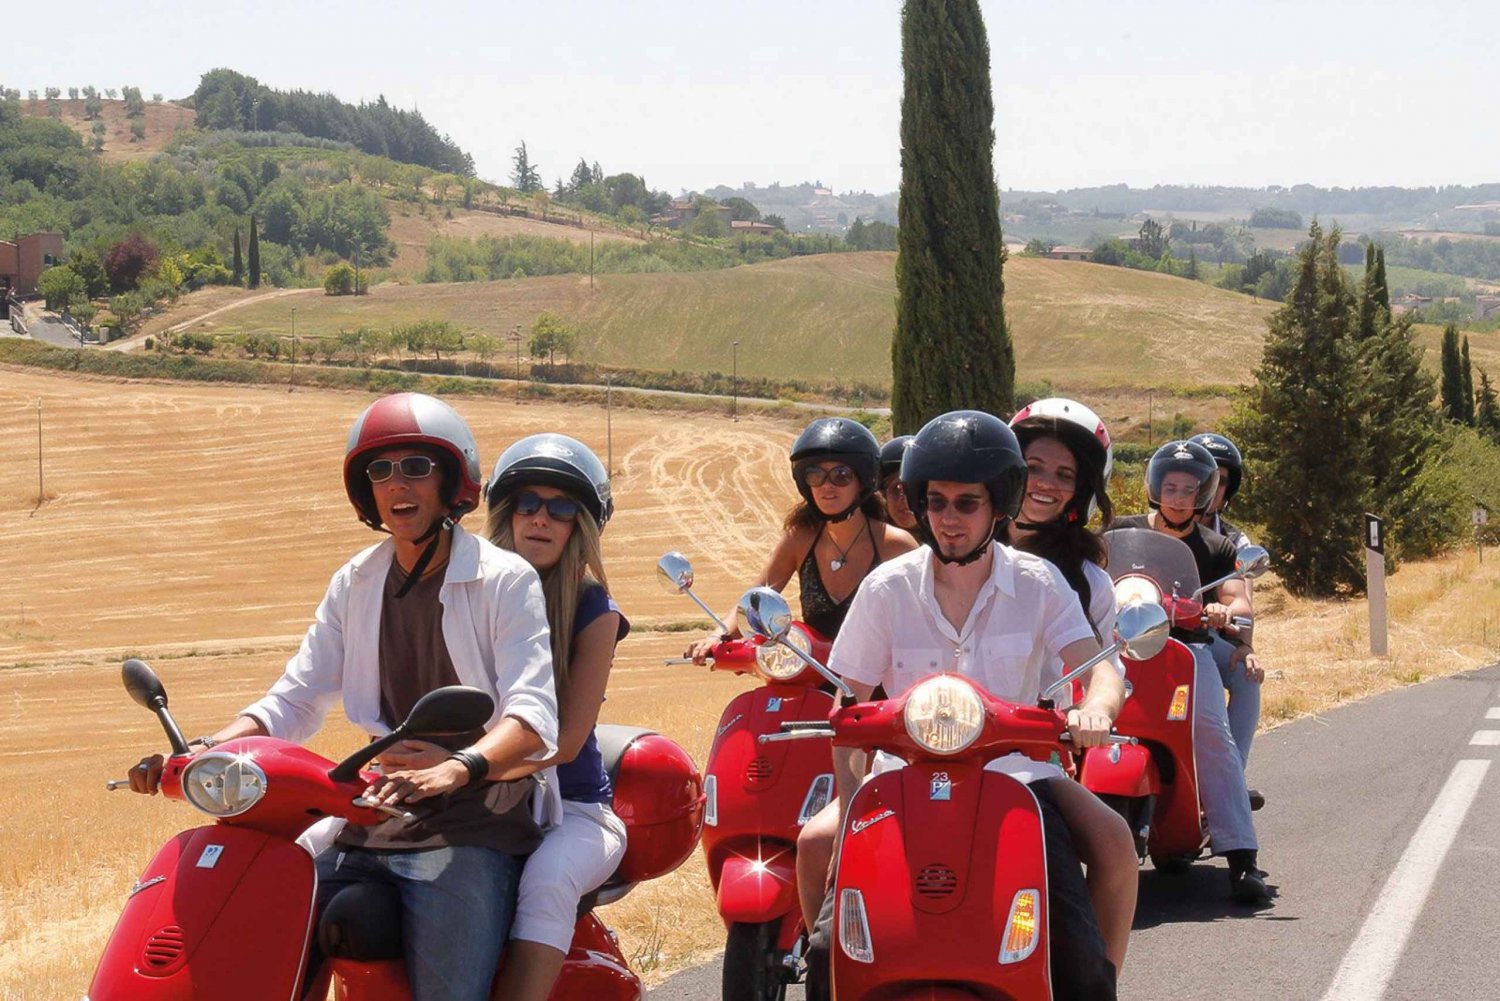 Z Florencji: Wycieczka Vespą w małej grupie po Toskanii z lunchem